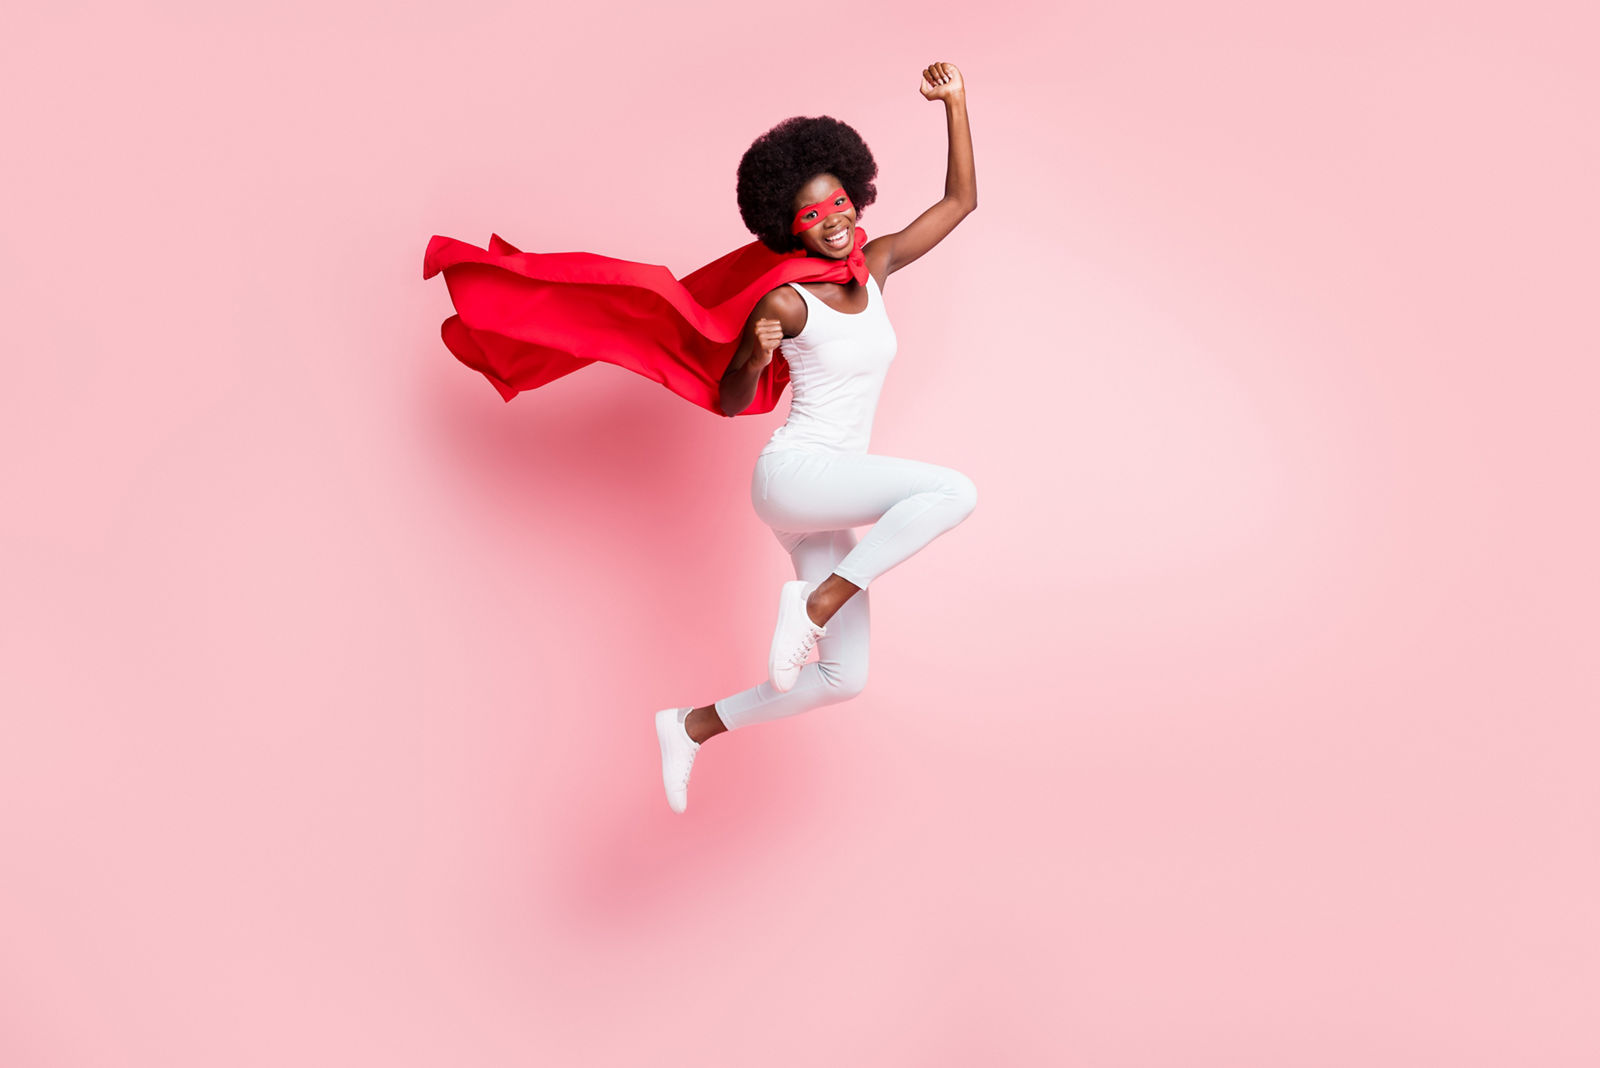 Frau mit rotem Superhelden Umhang springt in die Höhe